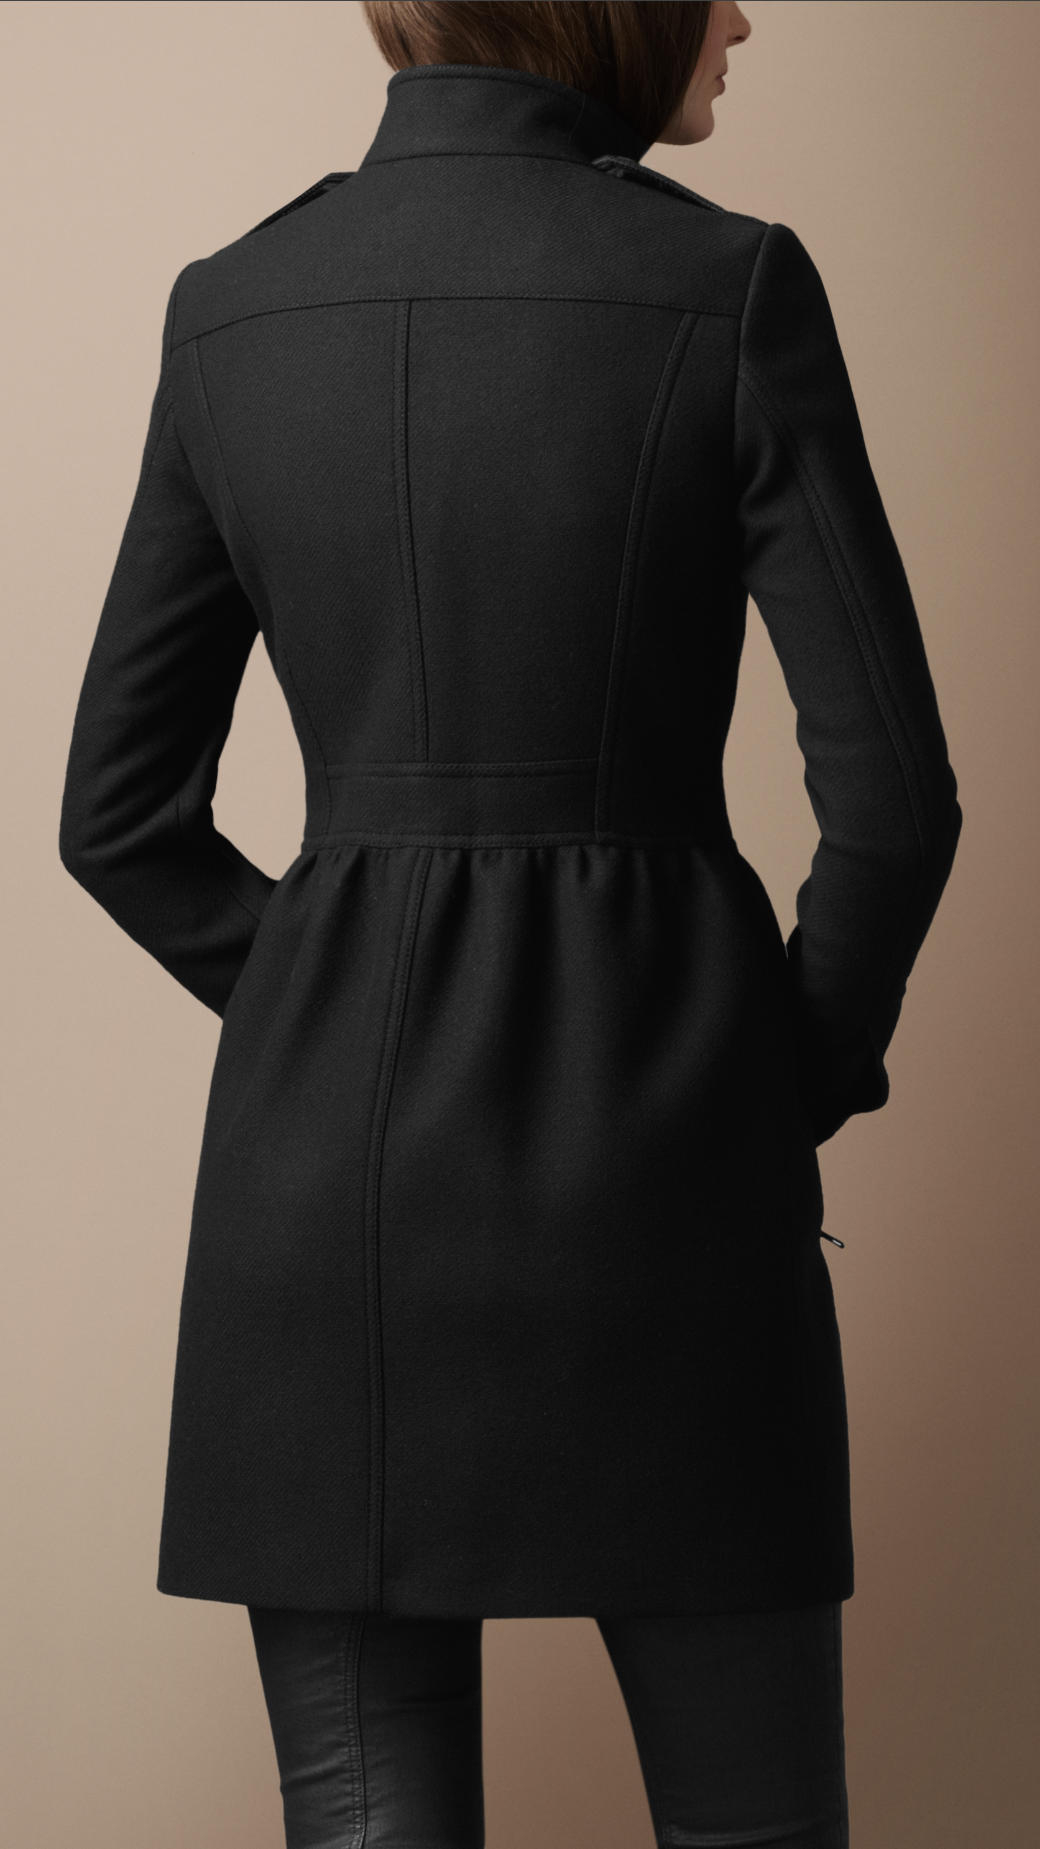 Lyst - Burberry Brit Wool Twill Dress Coat in Black